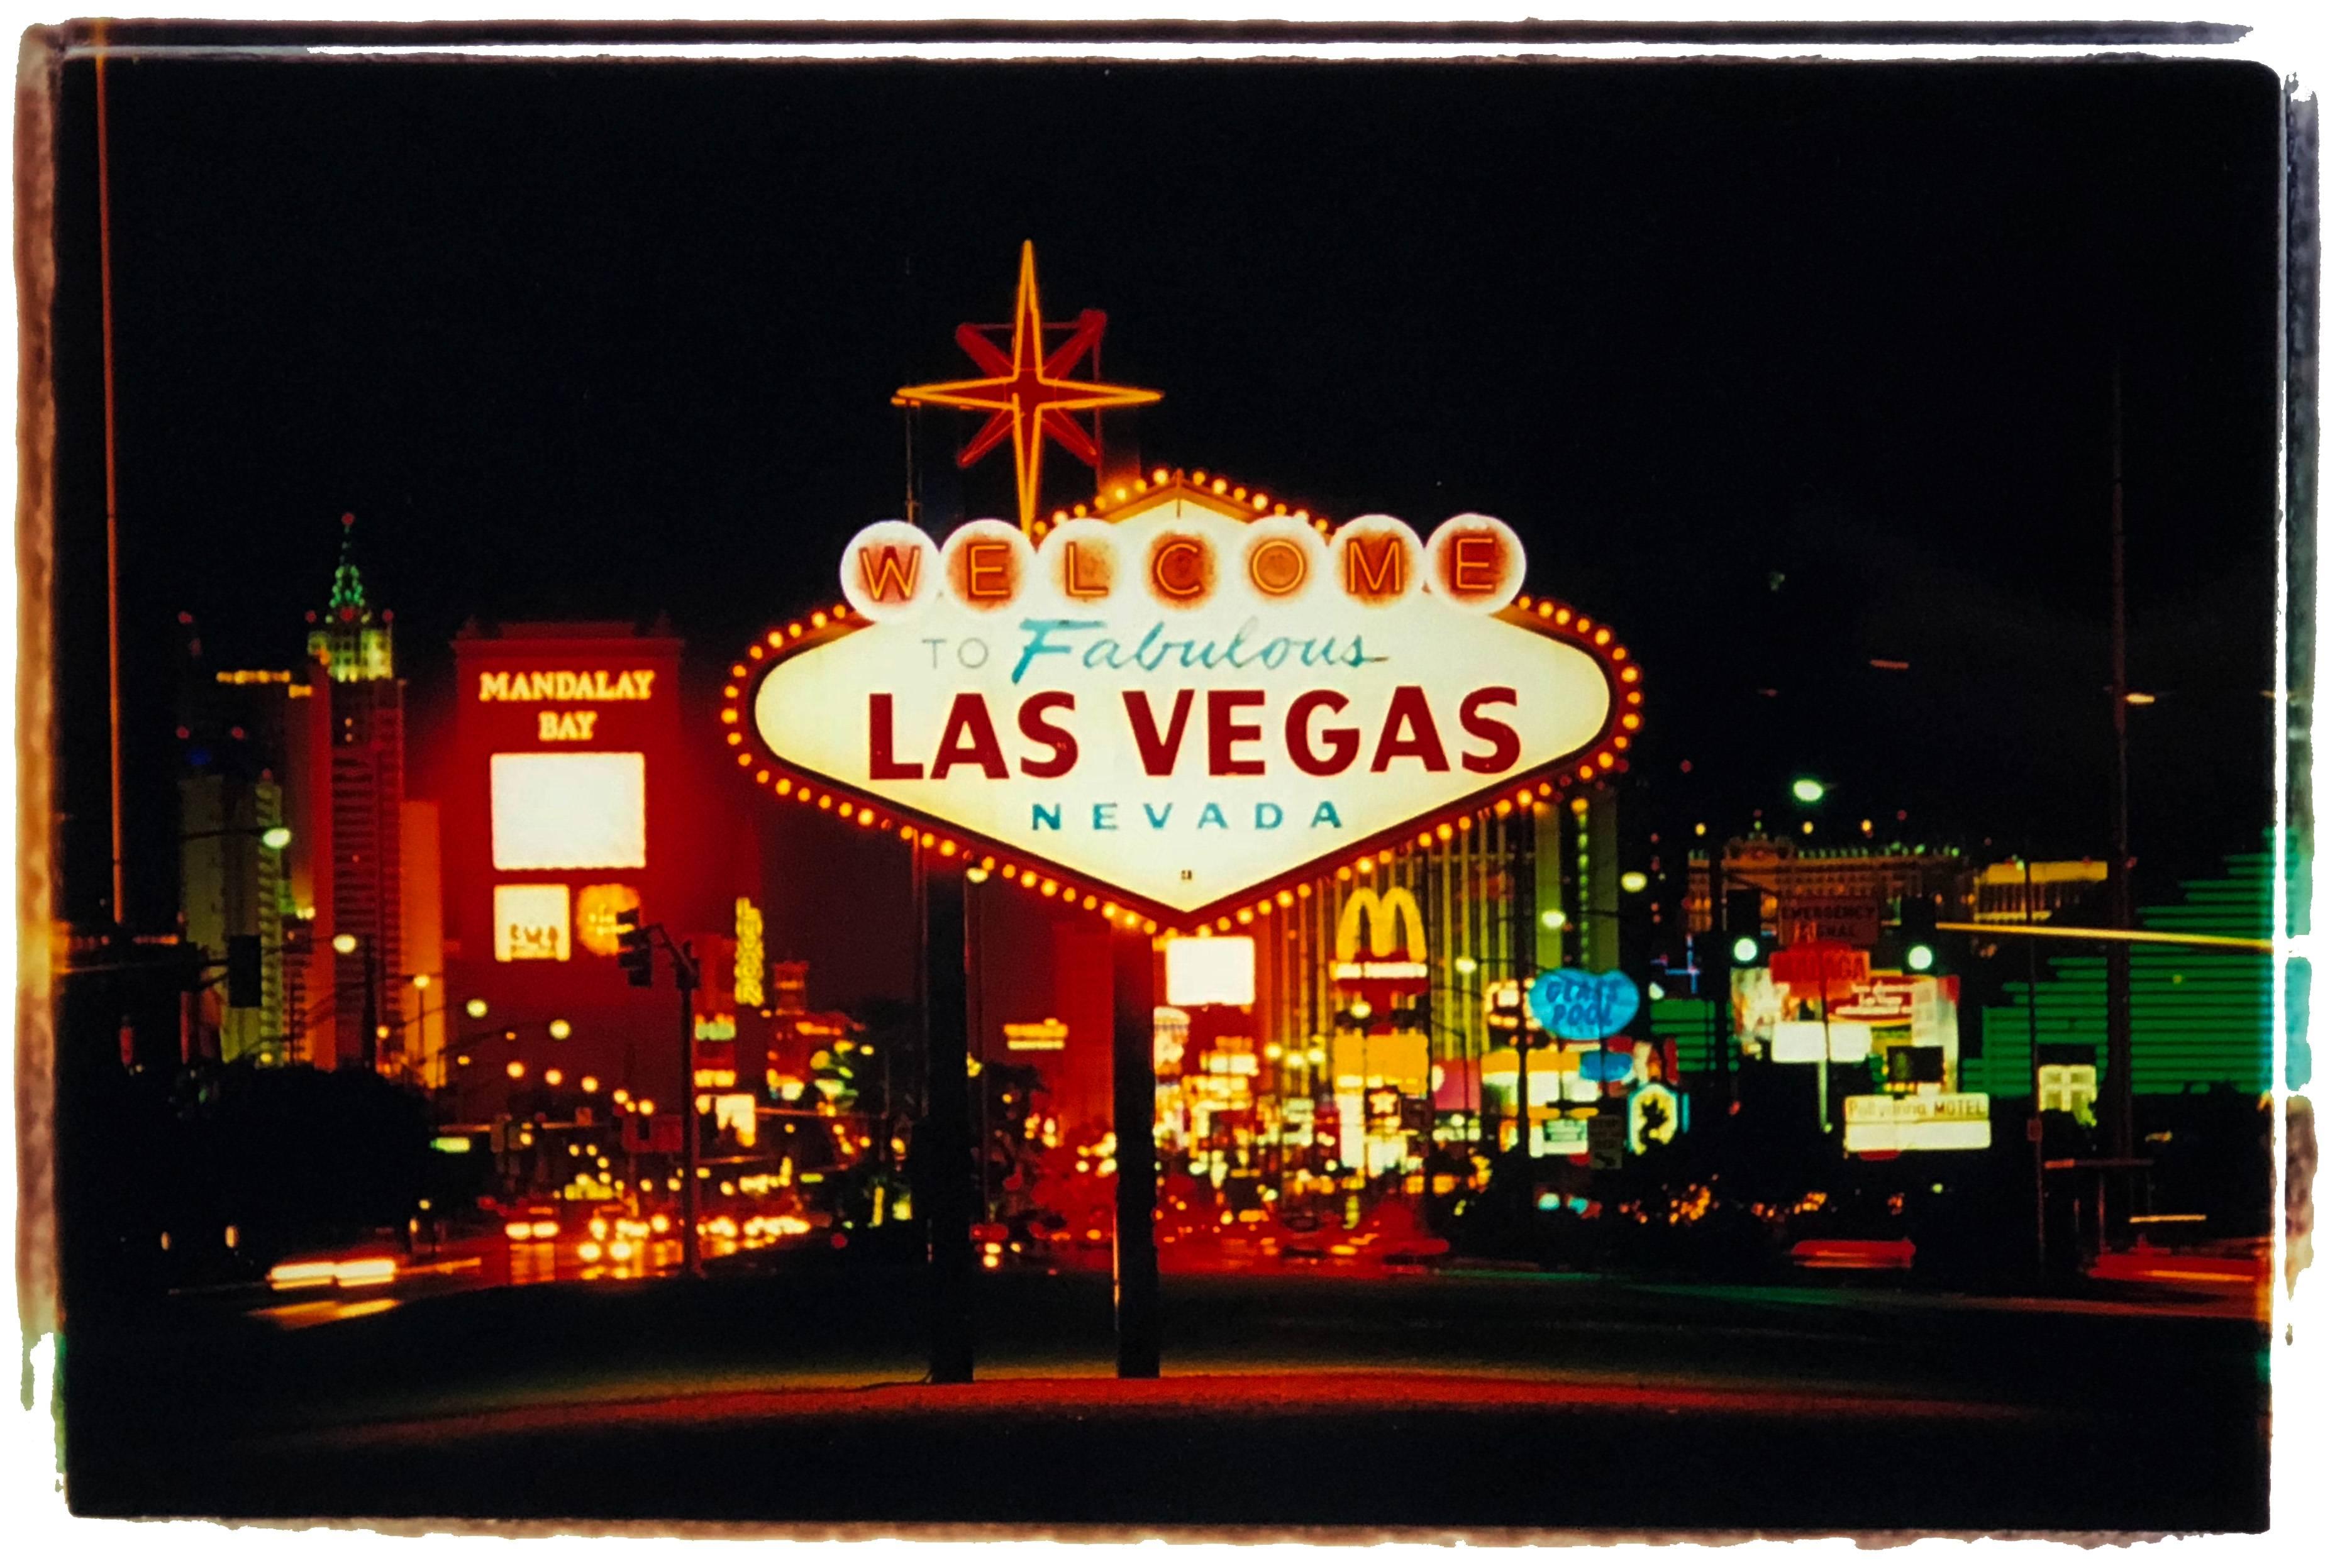 Print Richard Heeps - Arriving, Las Vegas - Photographie couleur d'un panneau de signalisation américain